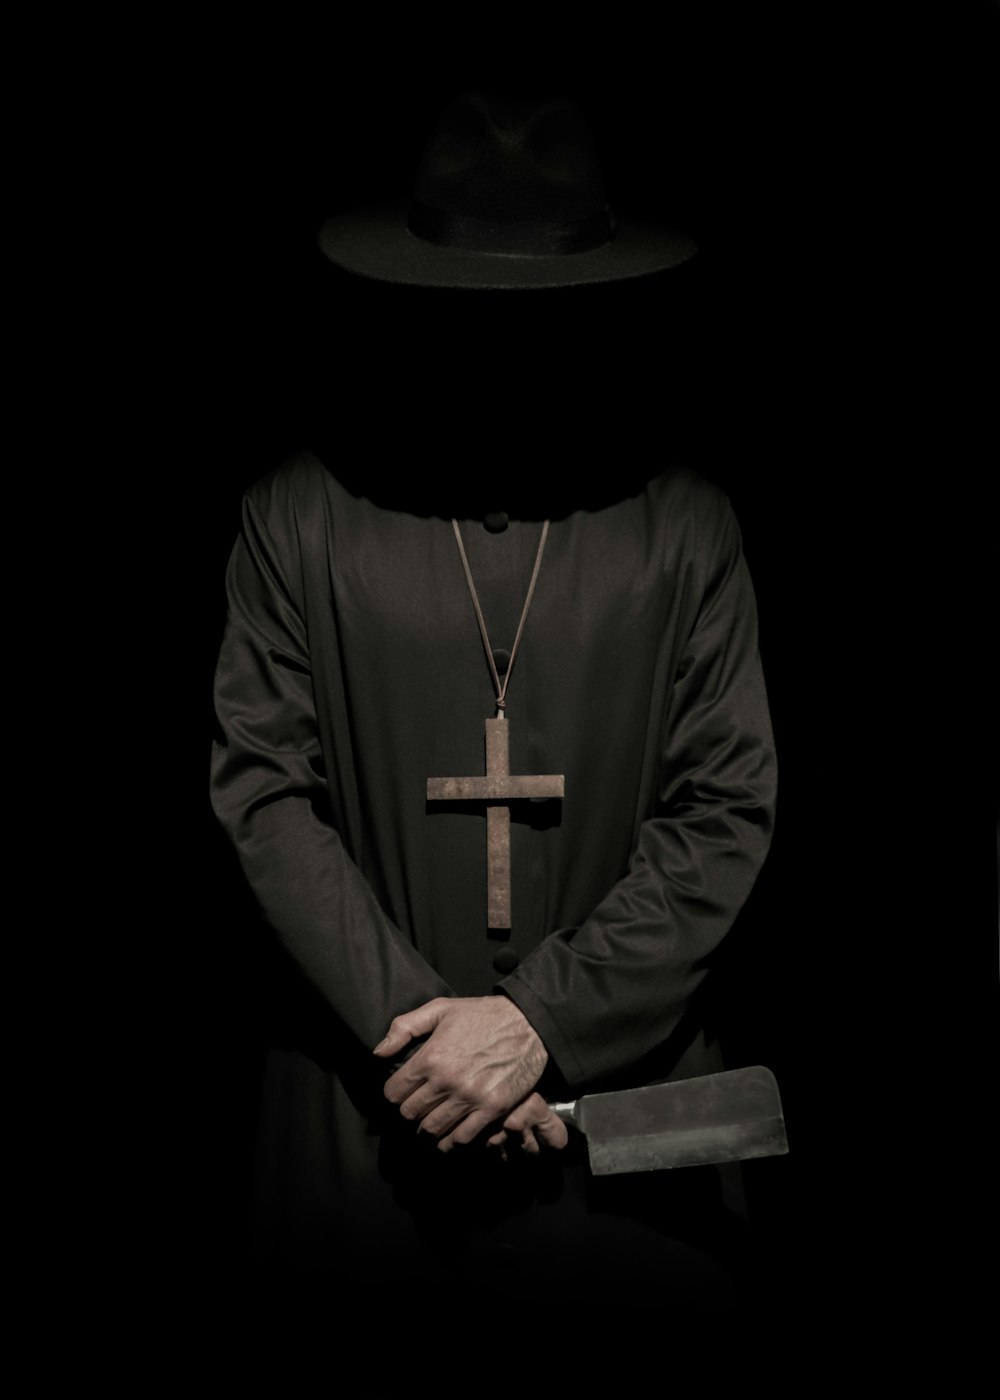 帽子をかぶり、包丁を持った十字架のネックレスを着た立っている人